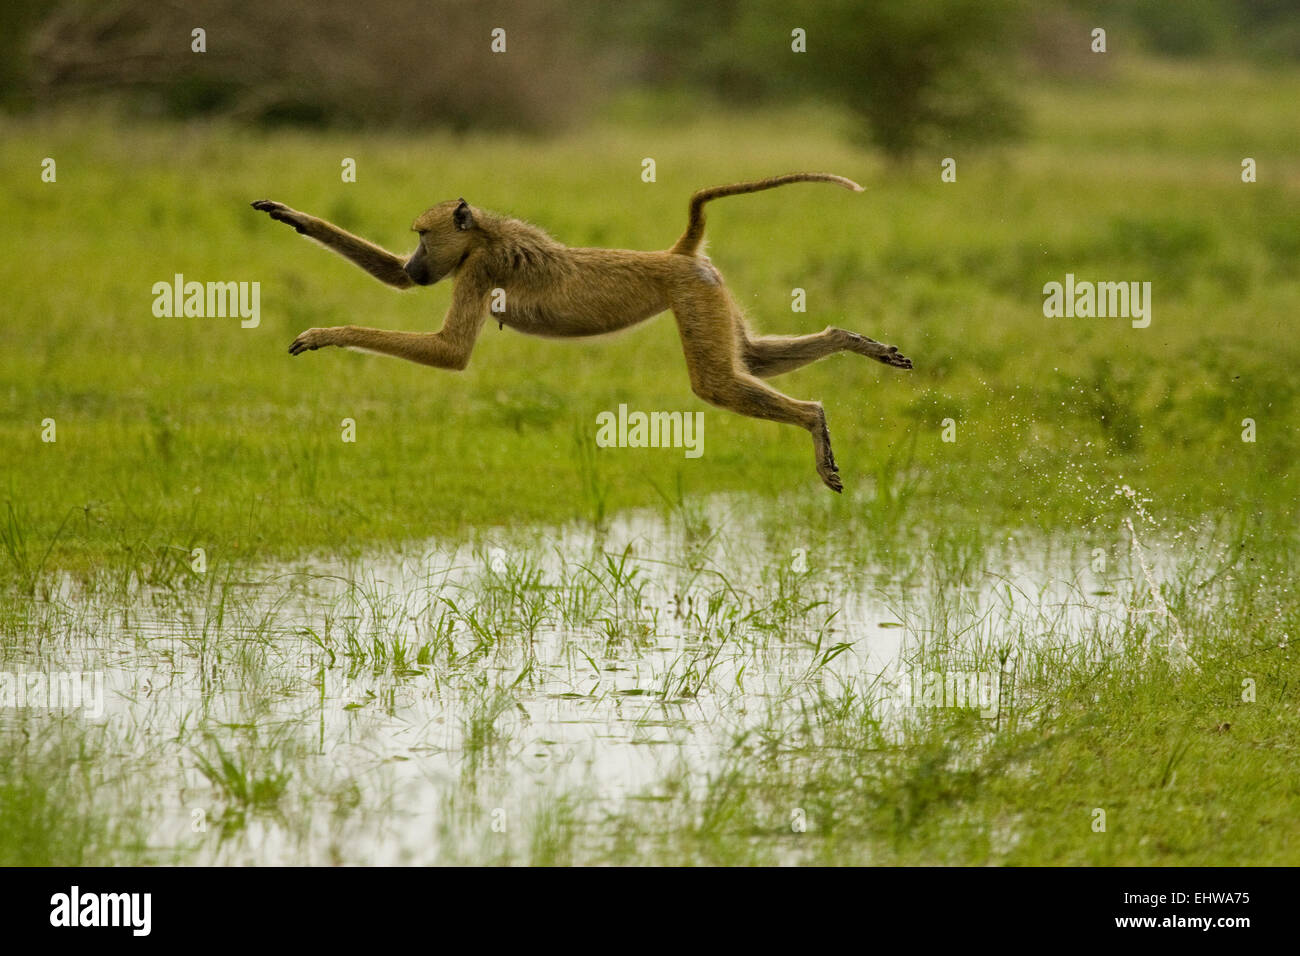 Femmina di babbuino giallo Papio cynocephalus saltando su una pozzanghera. Foto Stock